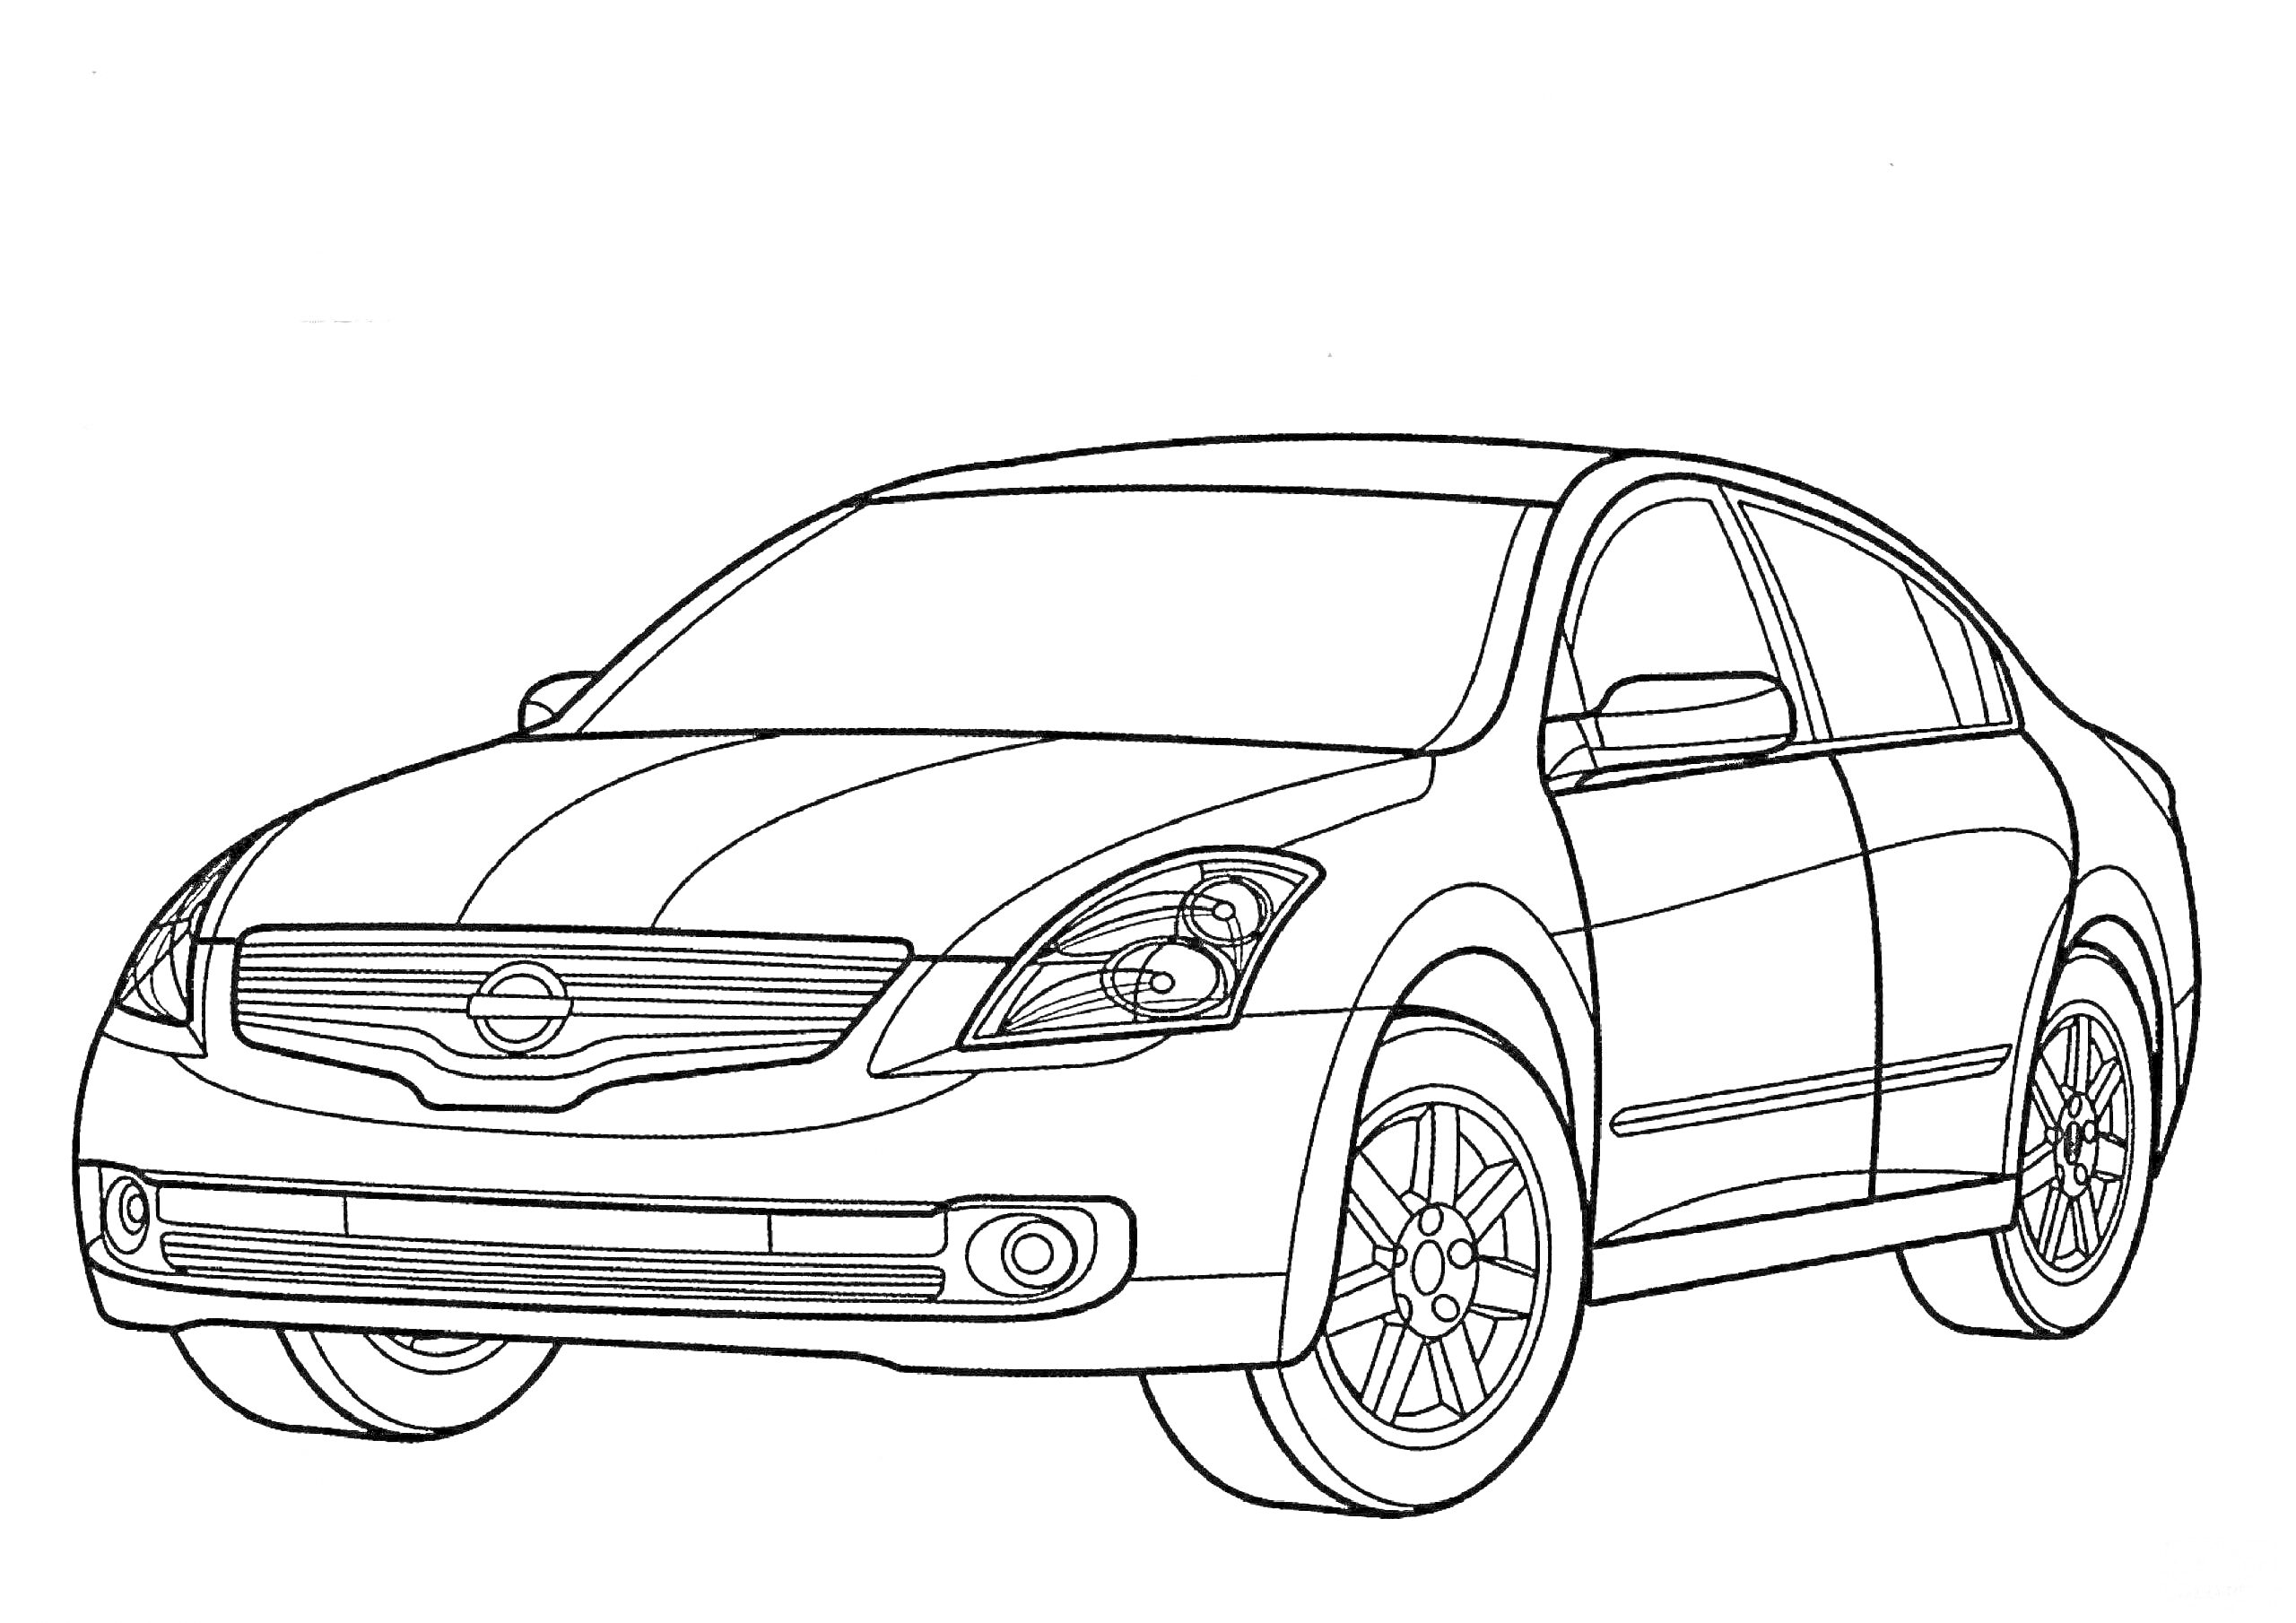 Легковой автомобиль Nissan, вид спереди с видимым логотипом, фарами, капотом, боковыми зеркалами, лобовым стеклом, дверями, колесами